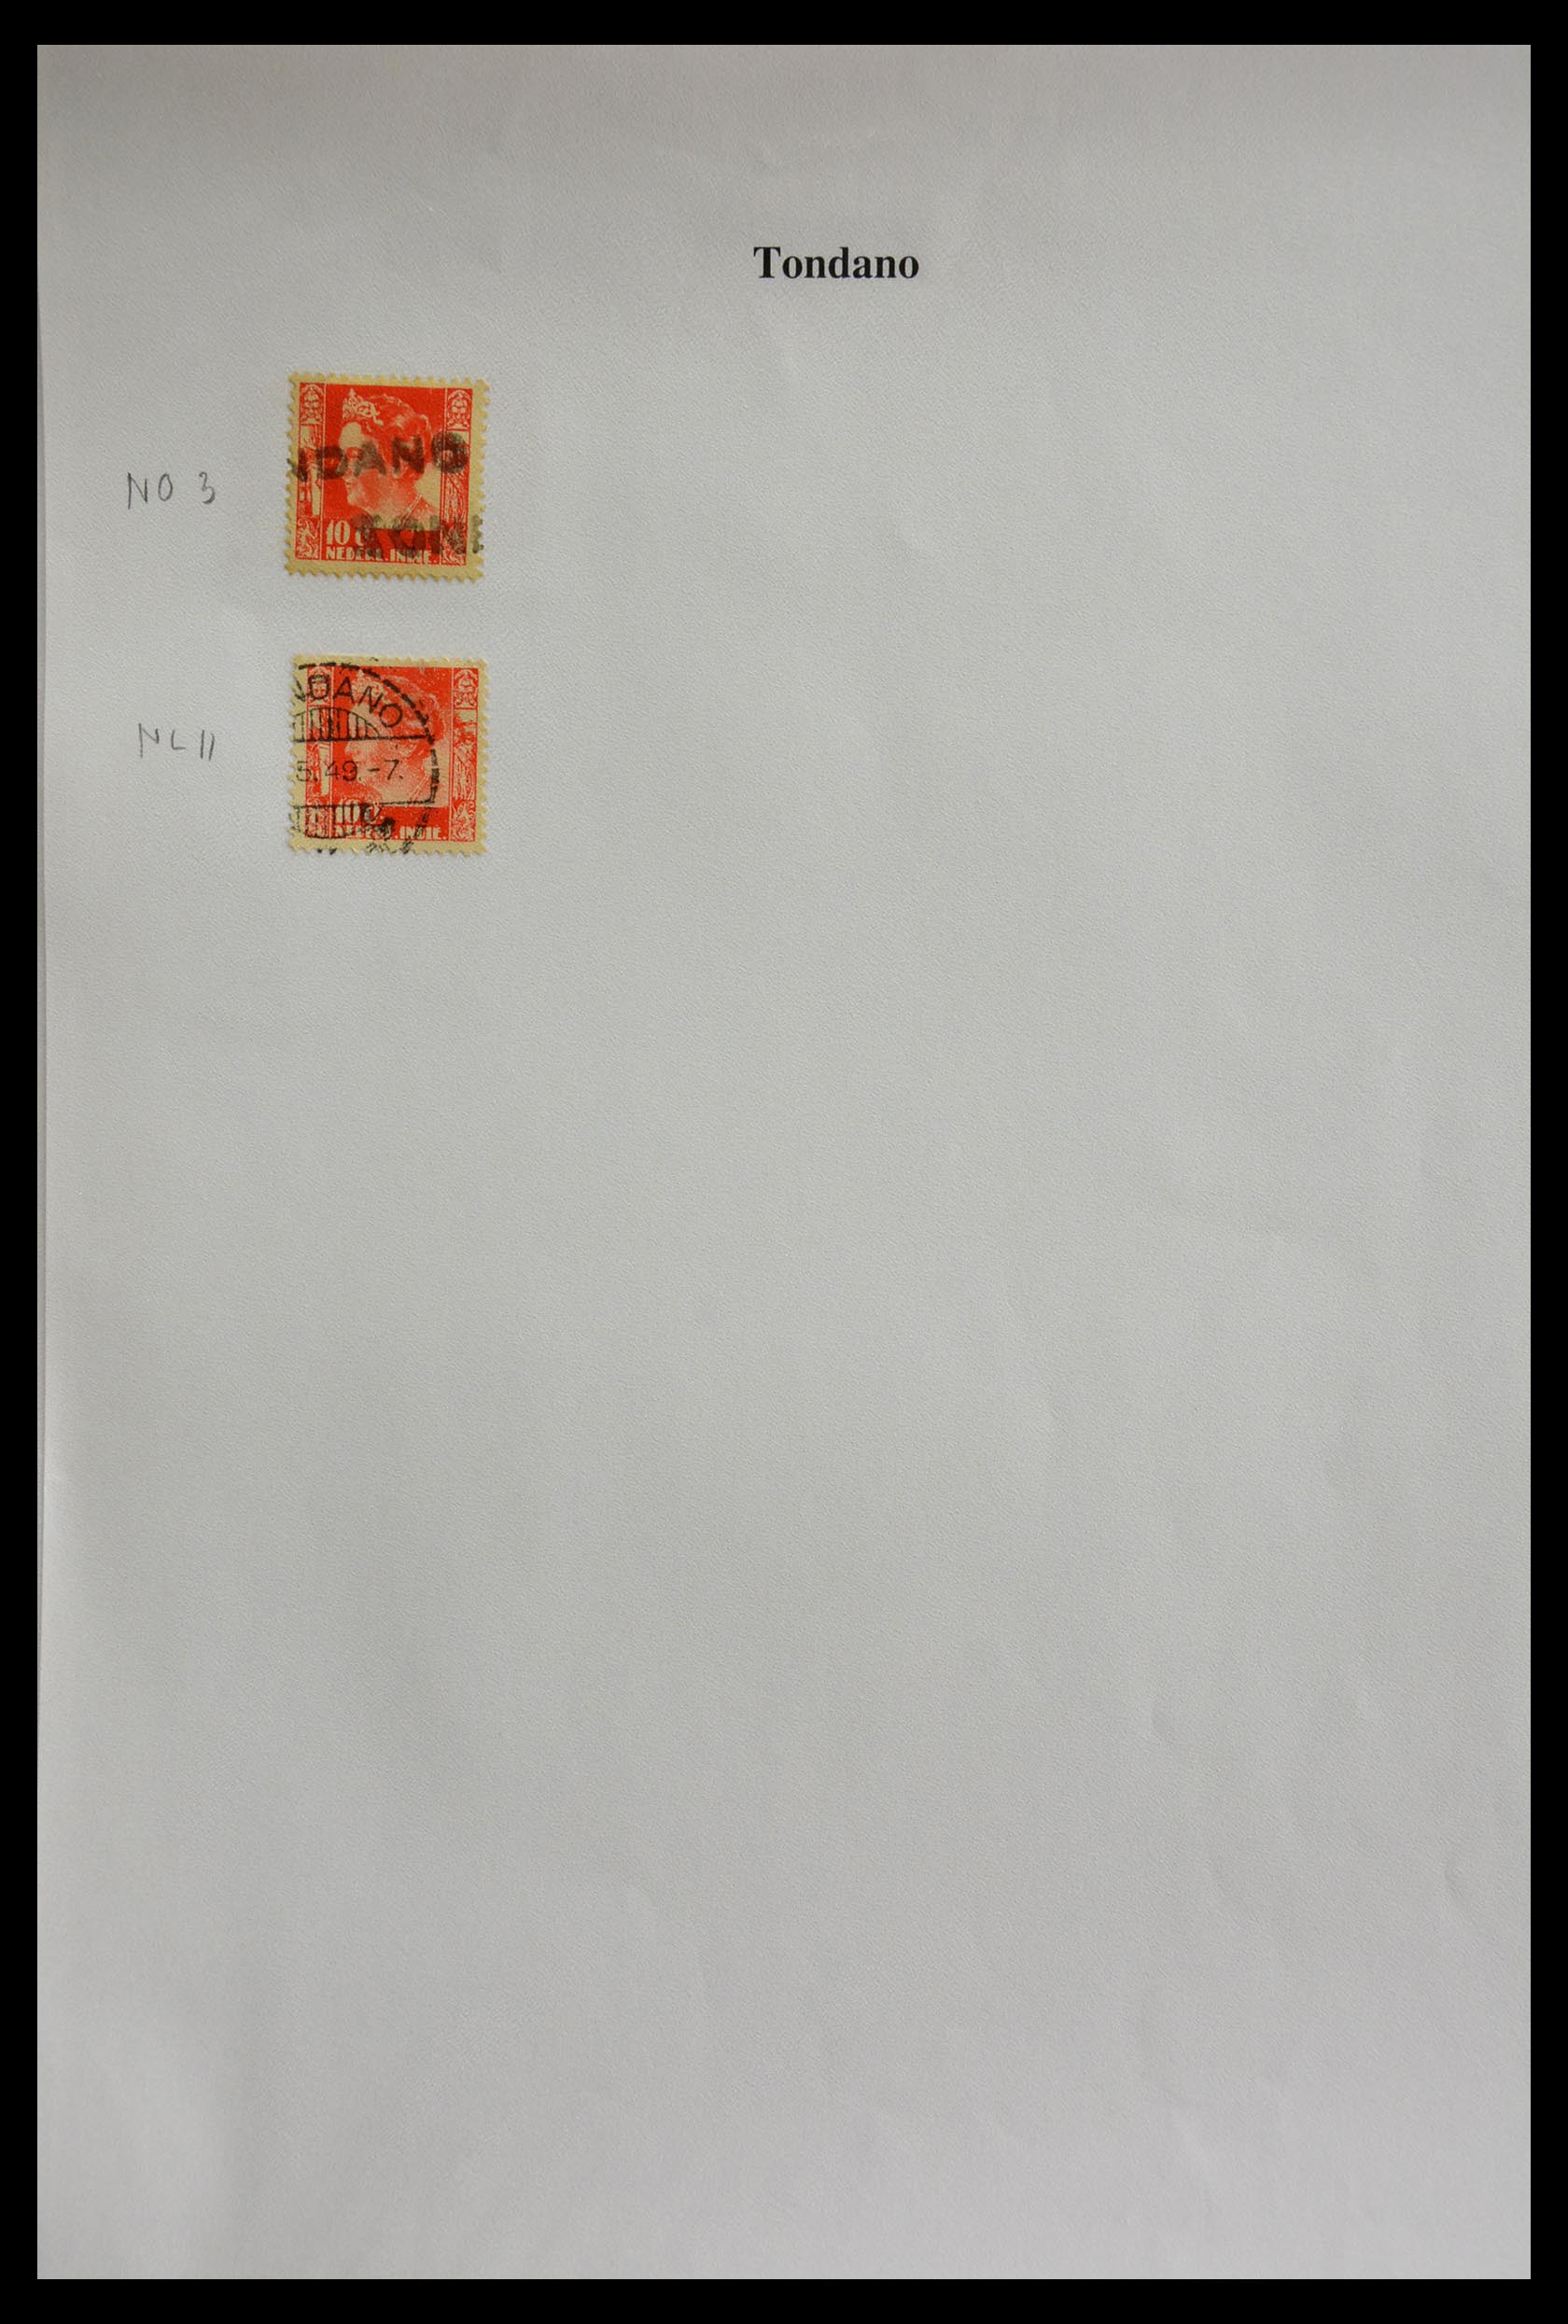 29422 327 - 29422 Nederlands Indië stempels.